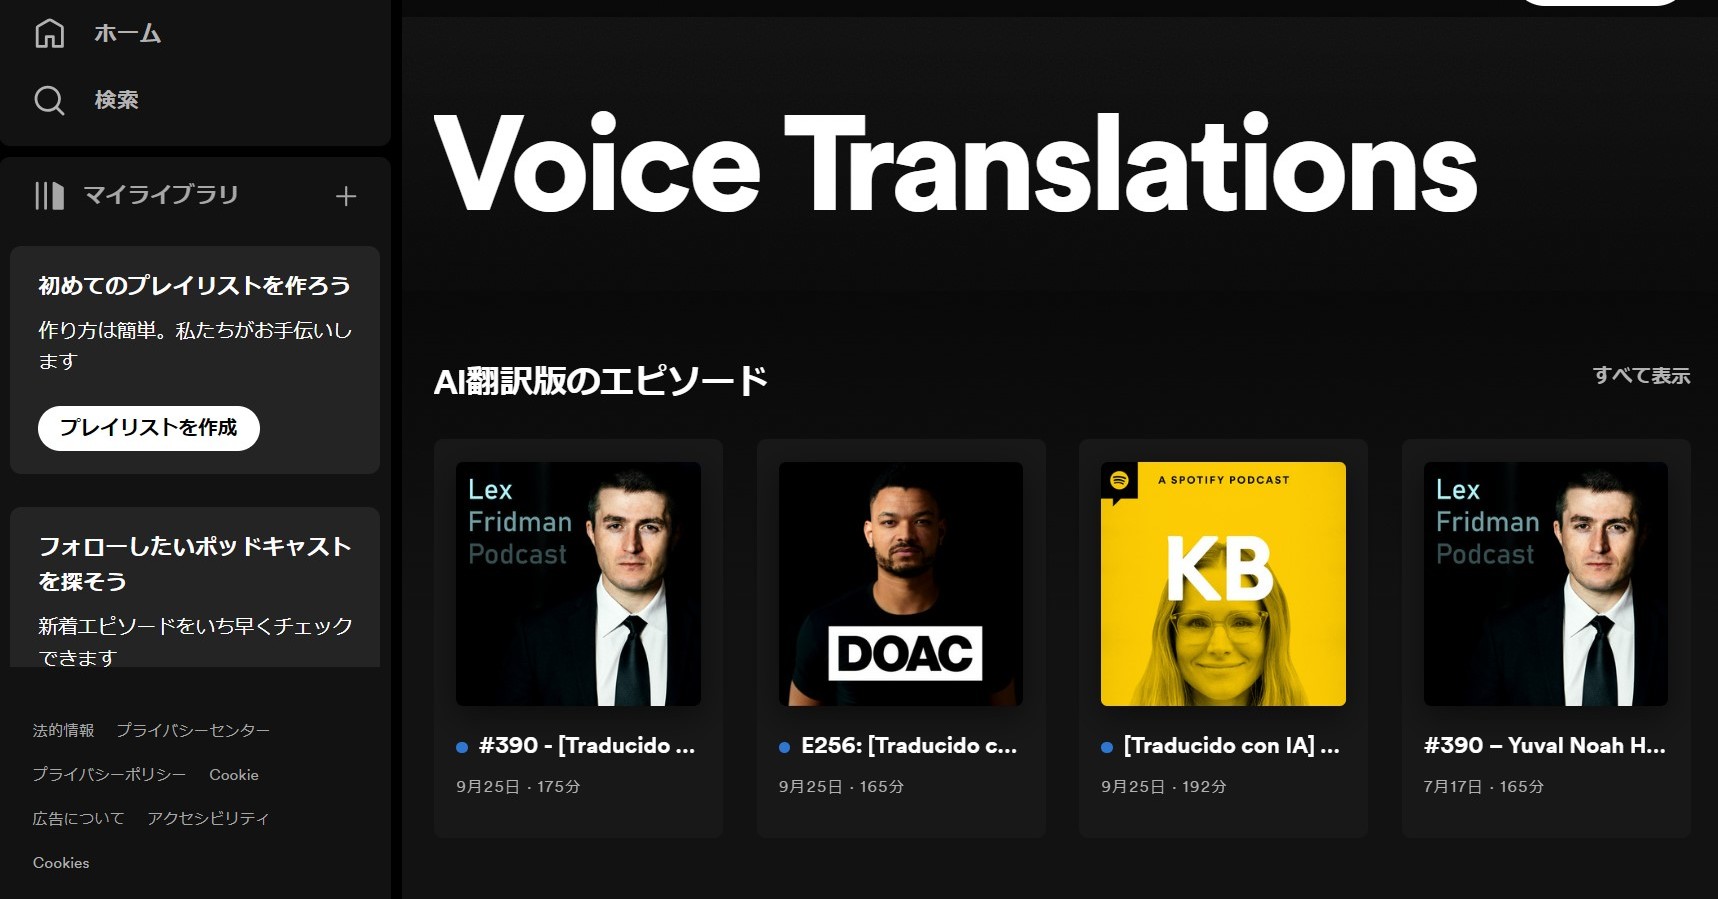 SpotifyのPodcast、OpenAIの技術で本人の声での多言語吹き替えが可能に